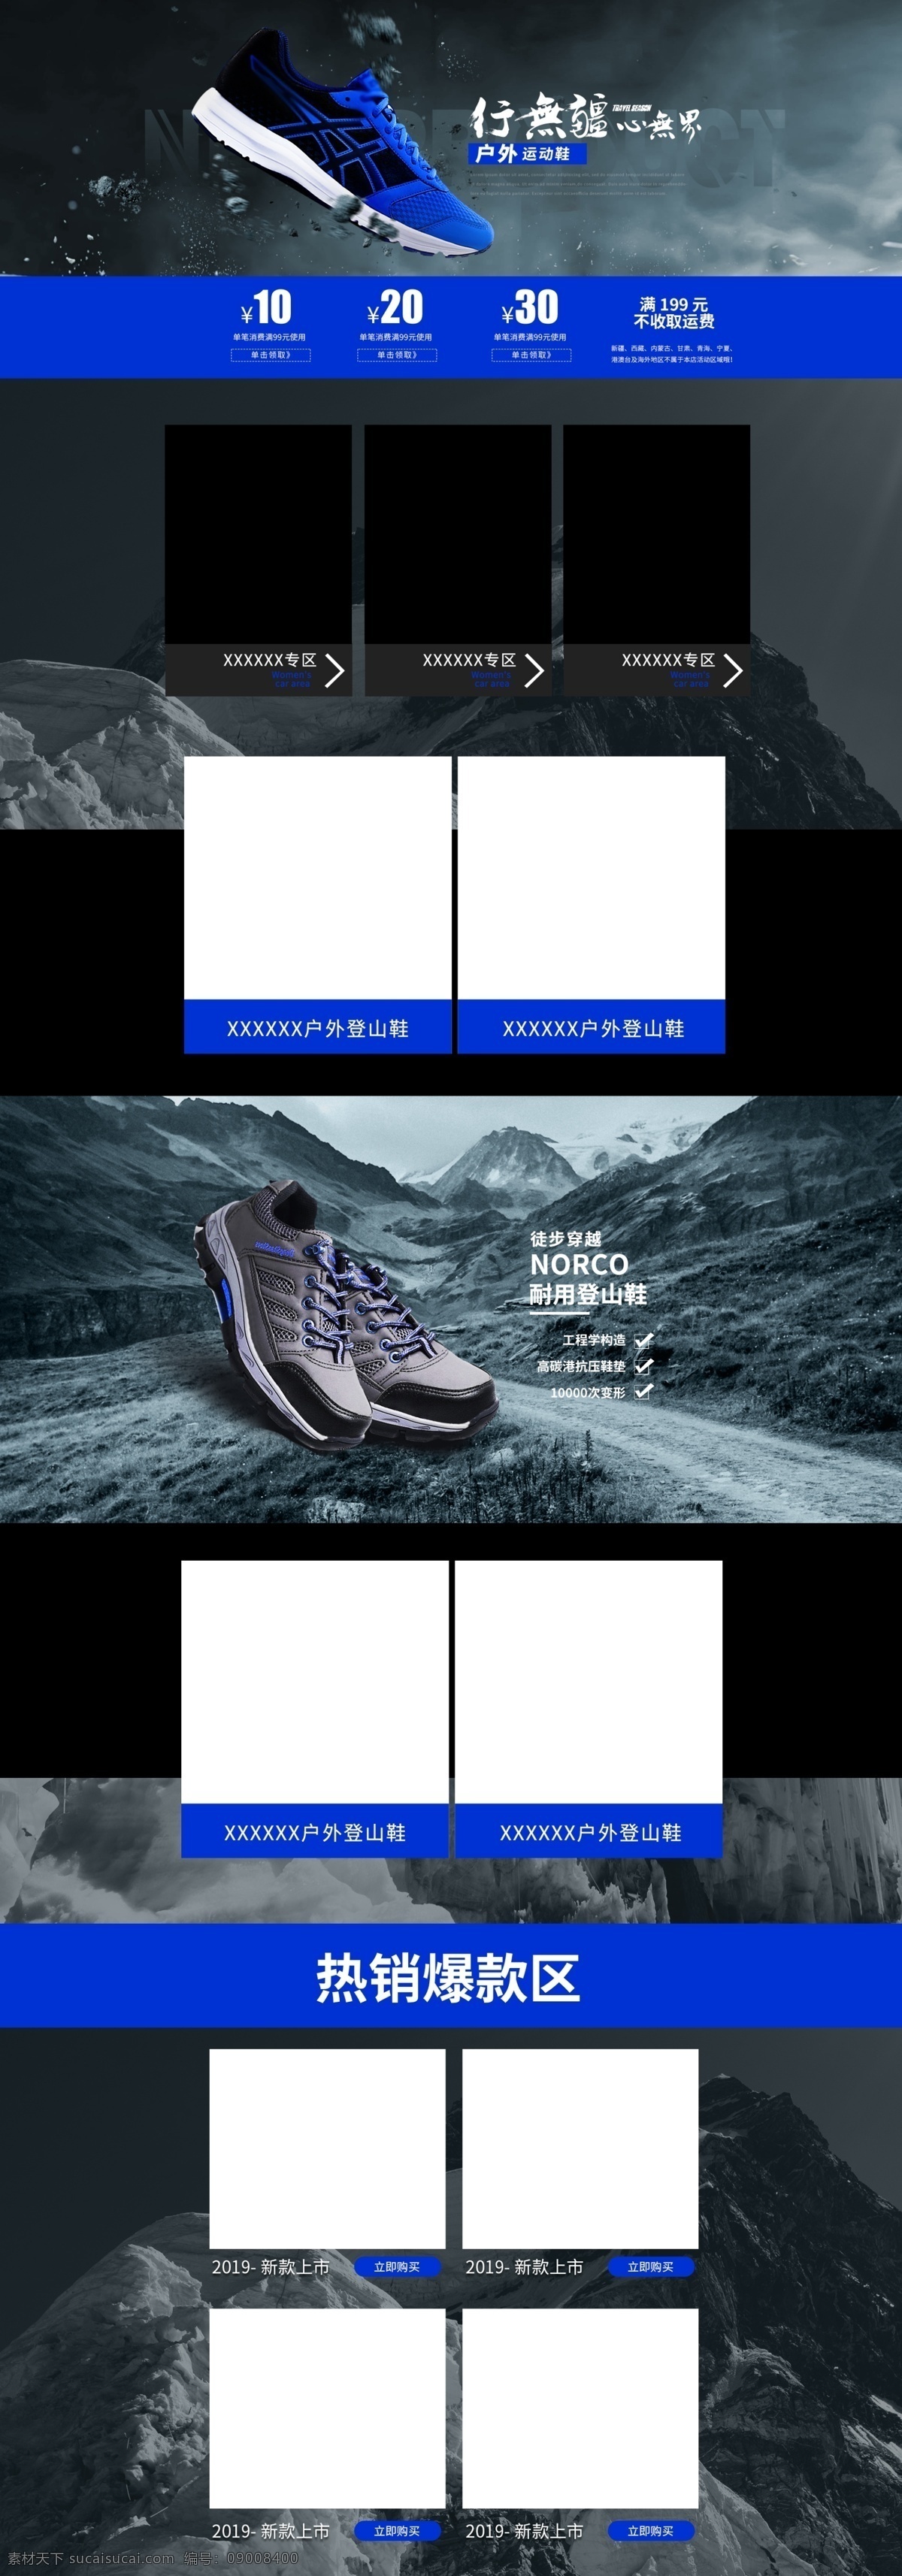 电商 淘宝 蓝色 户外运动 用品 首页 模板 户外用品 运动用品 服装鞋业 登山运动 徒步运动